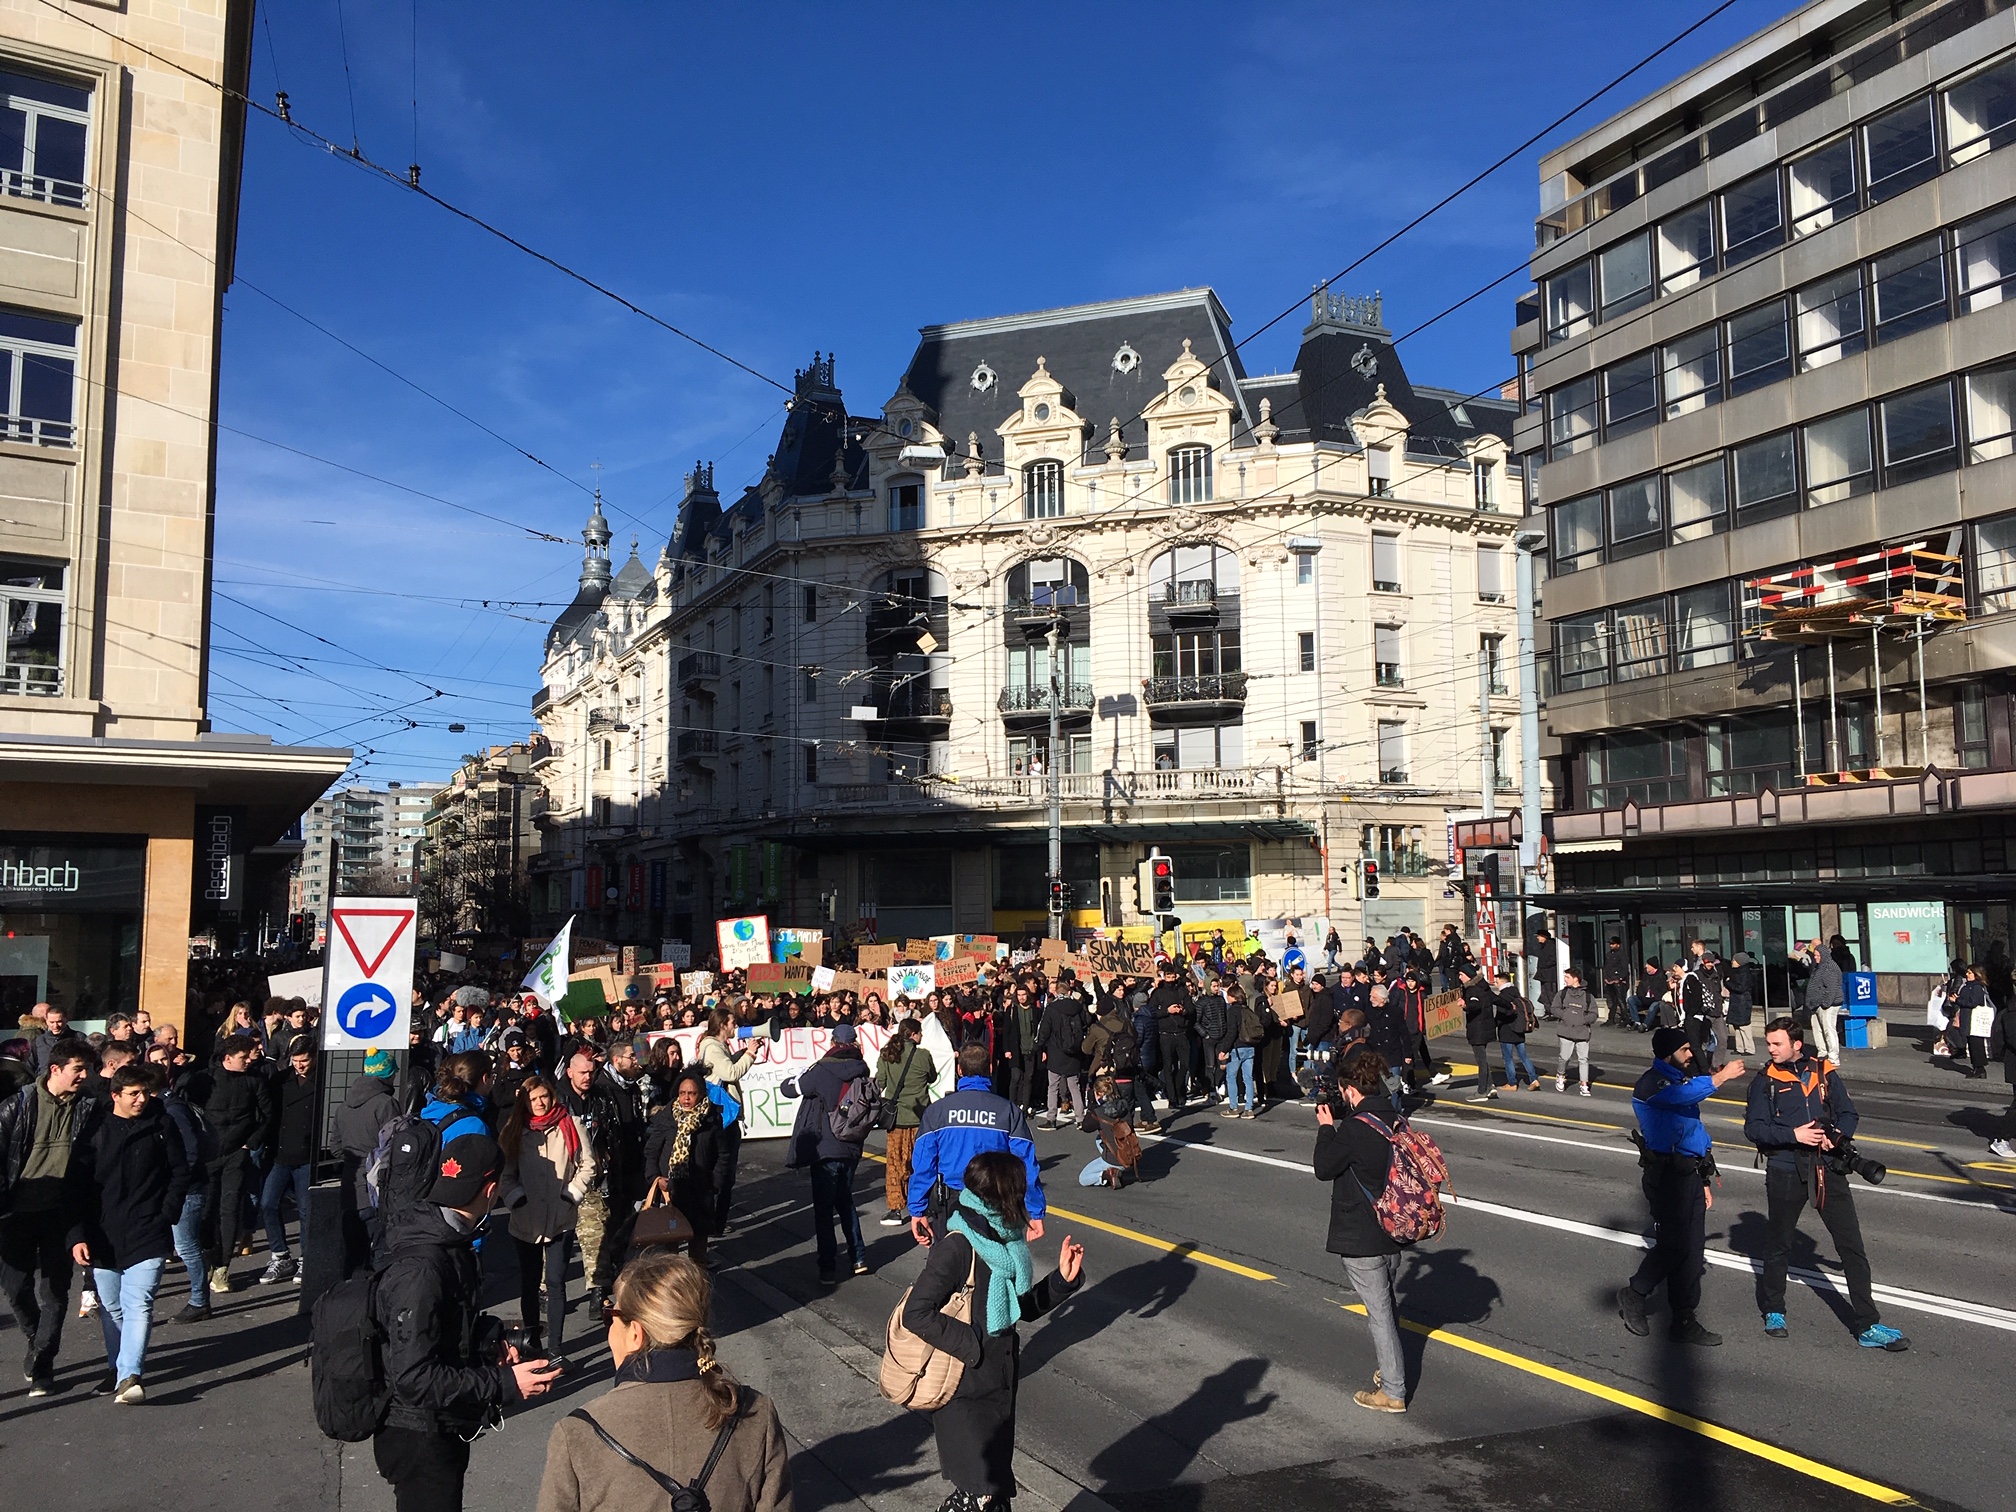 Plus de 8’000 jeunes en formation rassemblés  à Lausanne pour la grève du climat